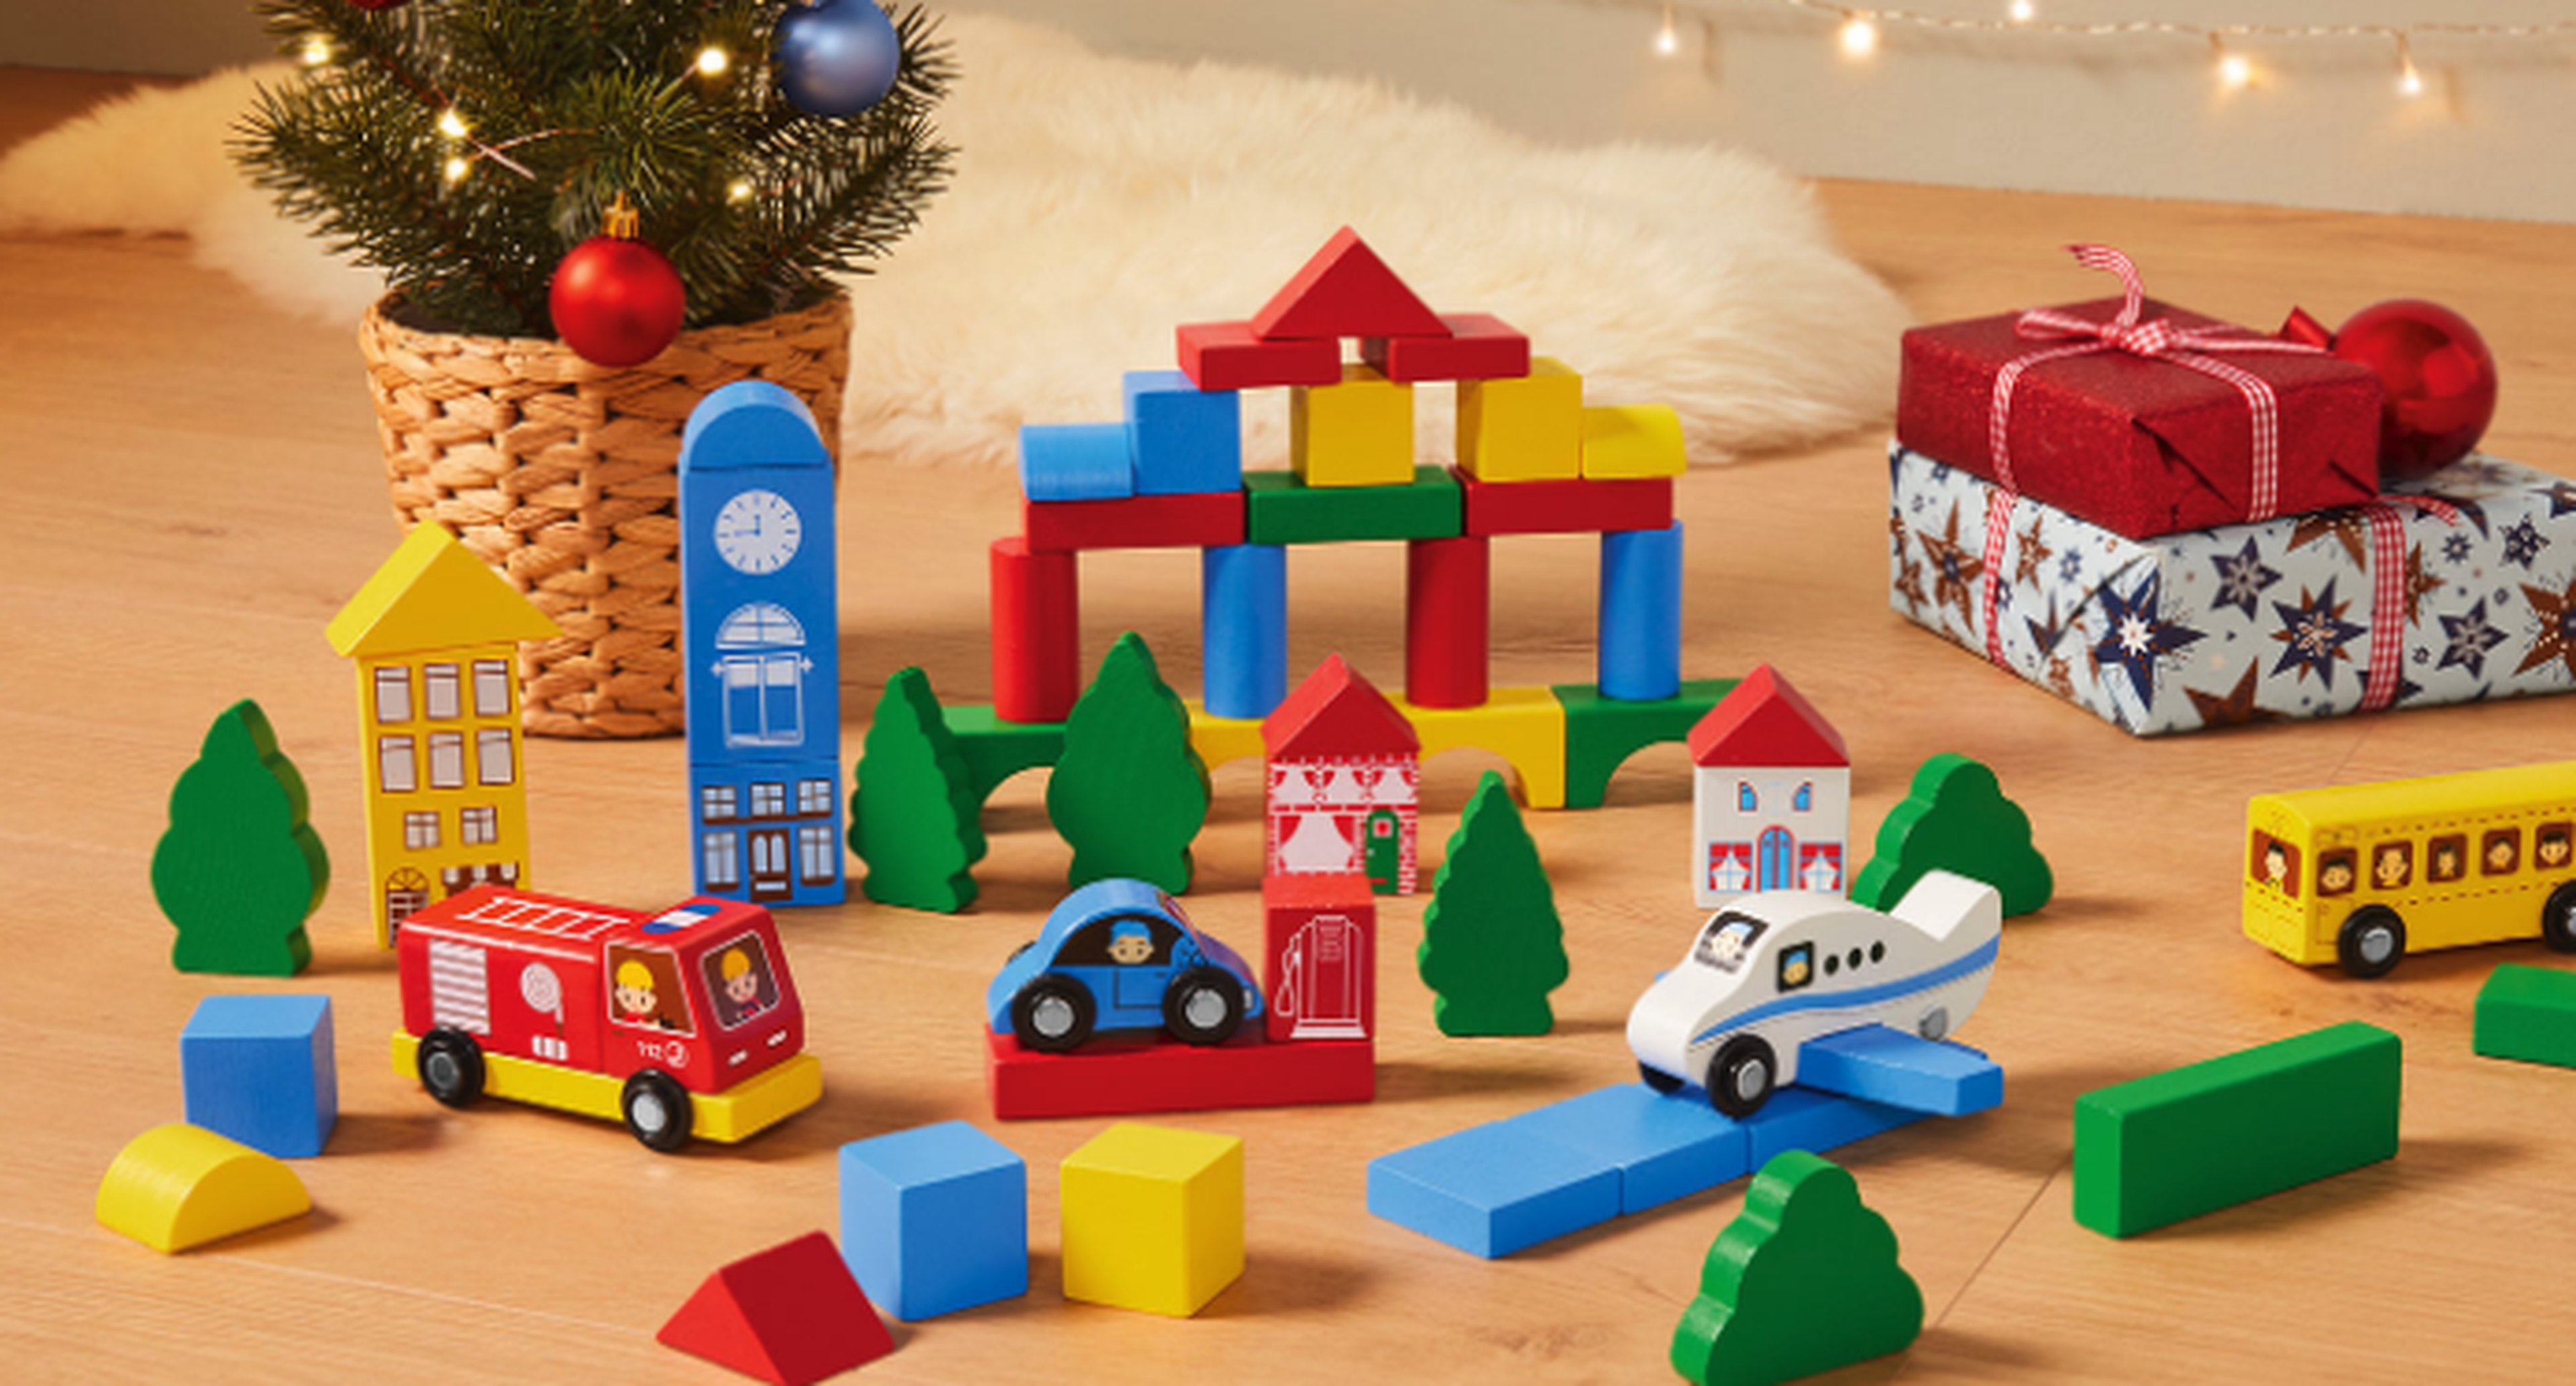 juguetes de madera de LIidl a estar a la venta en Navidad. | Business Insider España